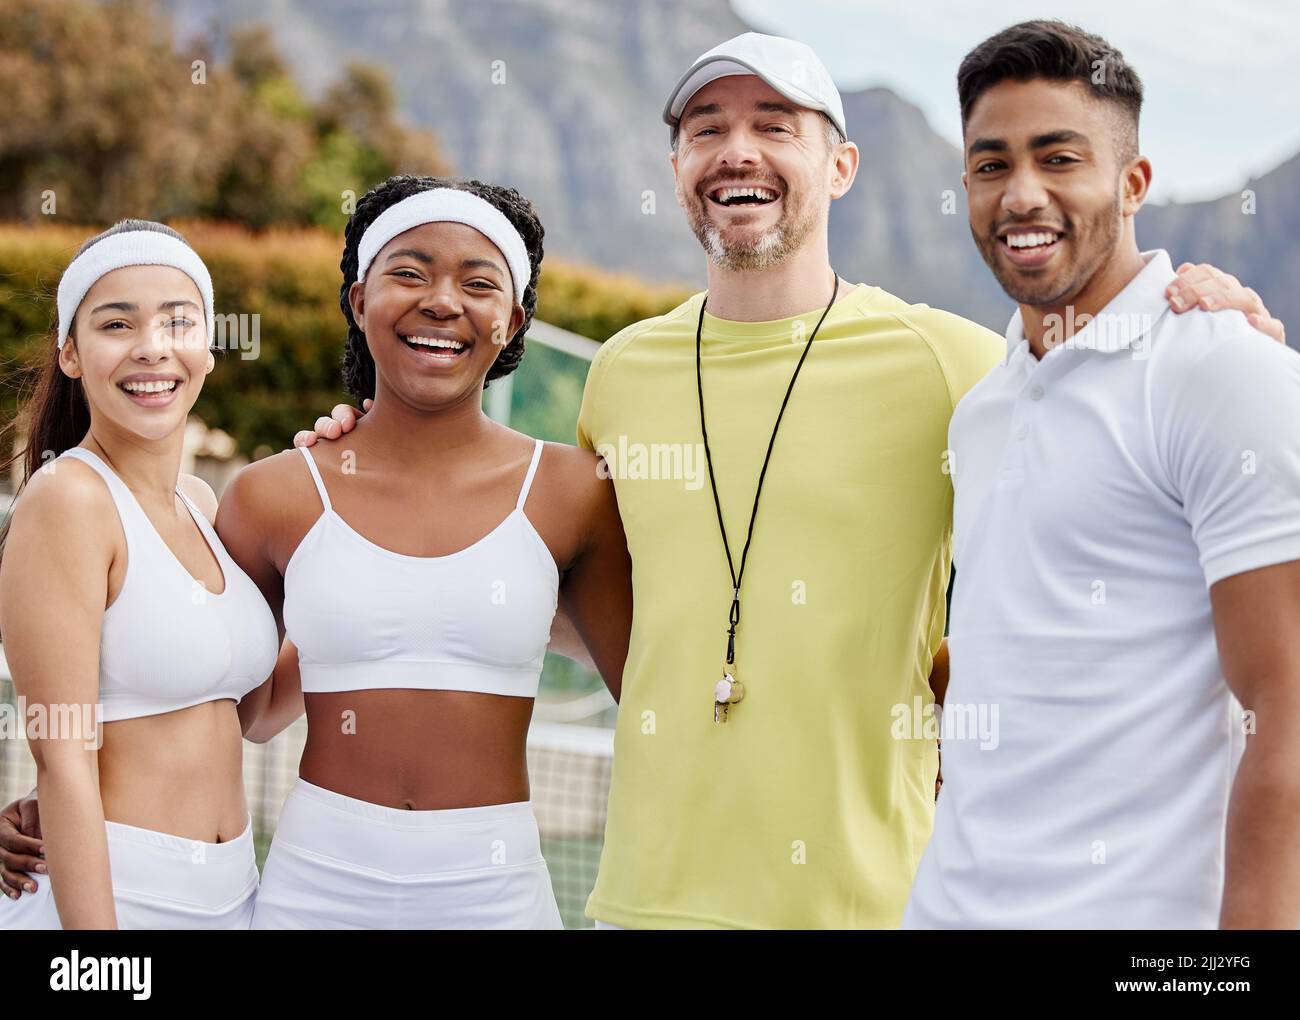 Quando lavoriamo insieme, vinciamo. Ritratto corto di tre giovani giocatori di tennis e il loro allenatore in piedi fuori sul campo. Foto Stock